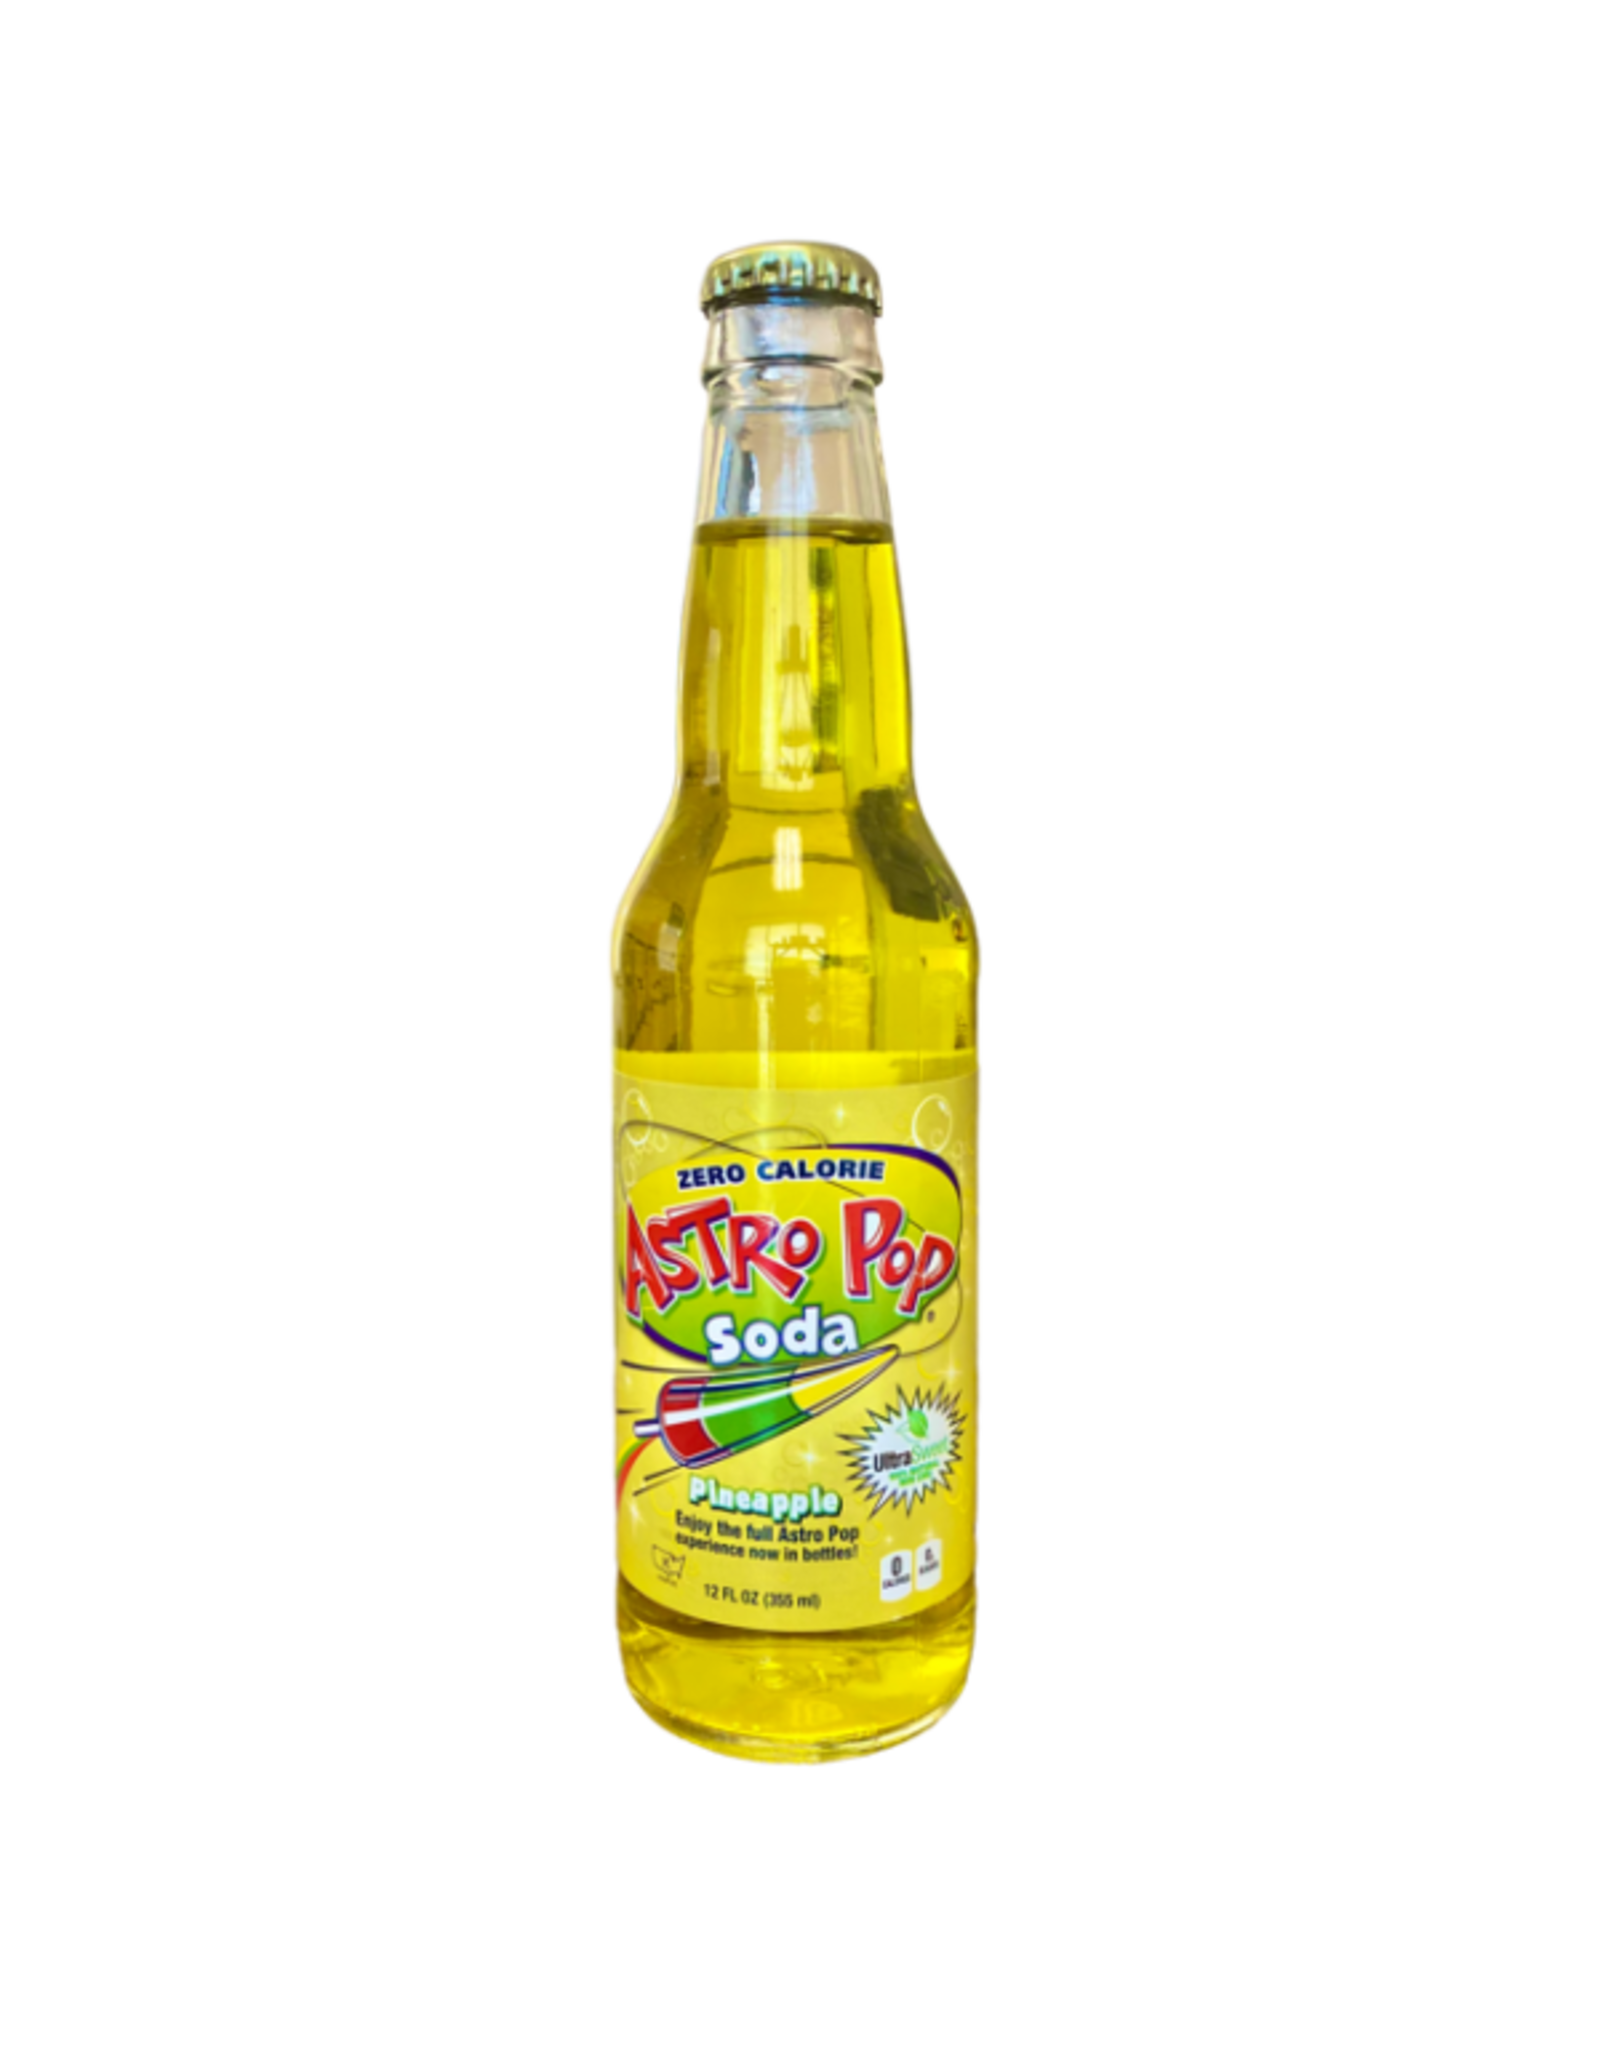 Astro Pop Pineapple Zero Sugar Soda